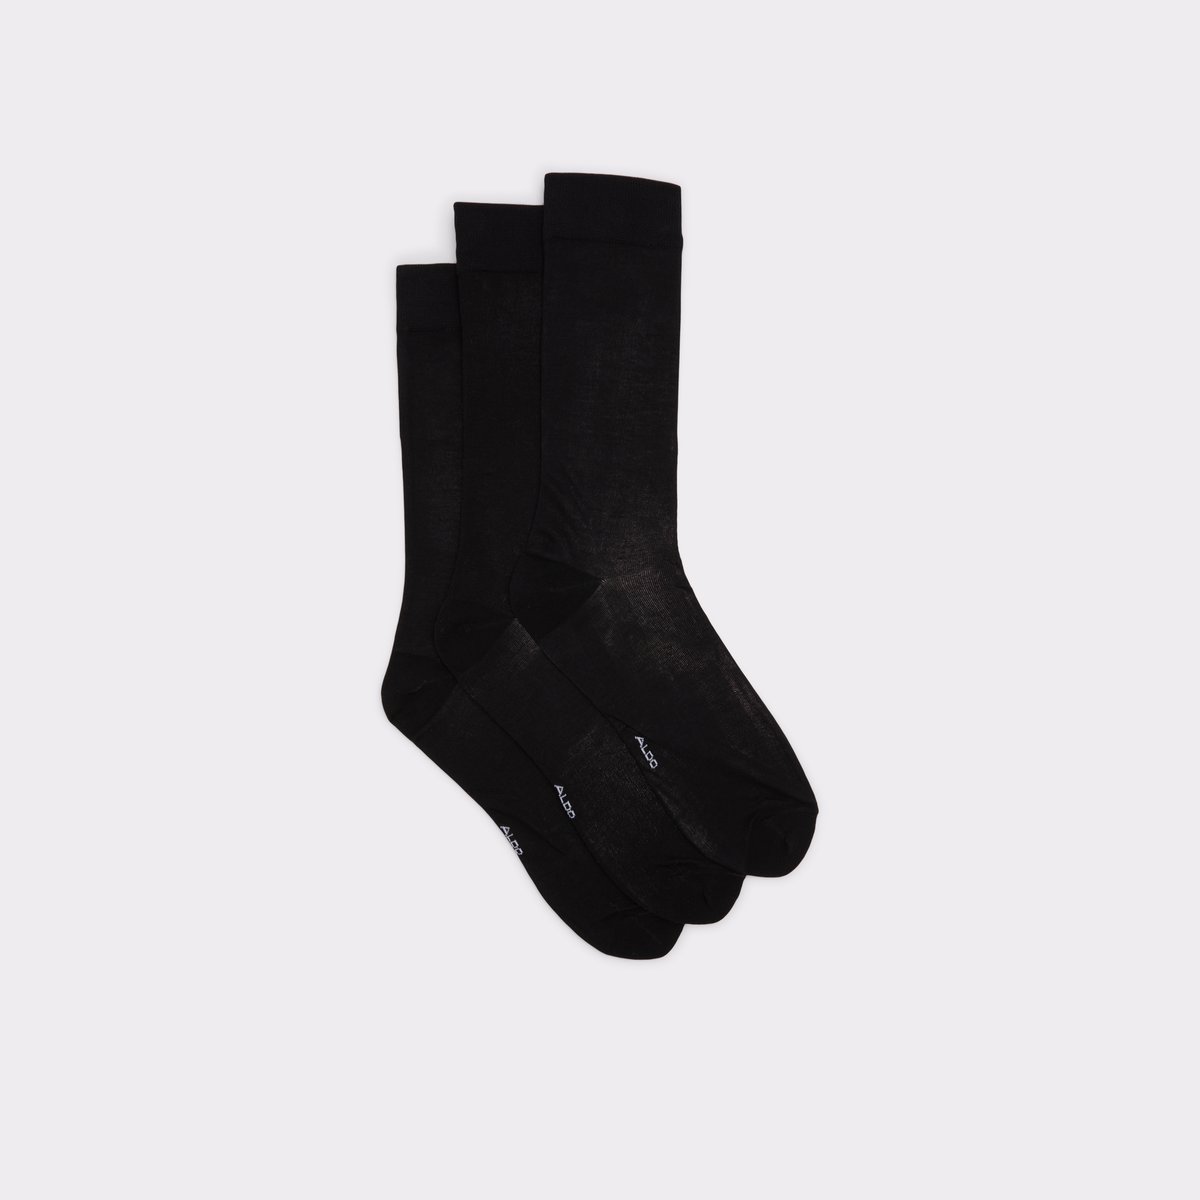 Andreyor Black Men's Socks | ALDO Canada